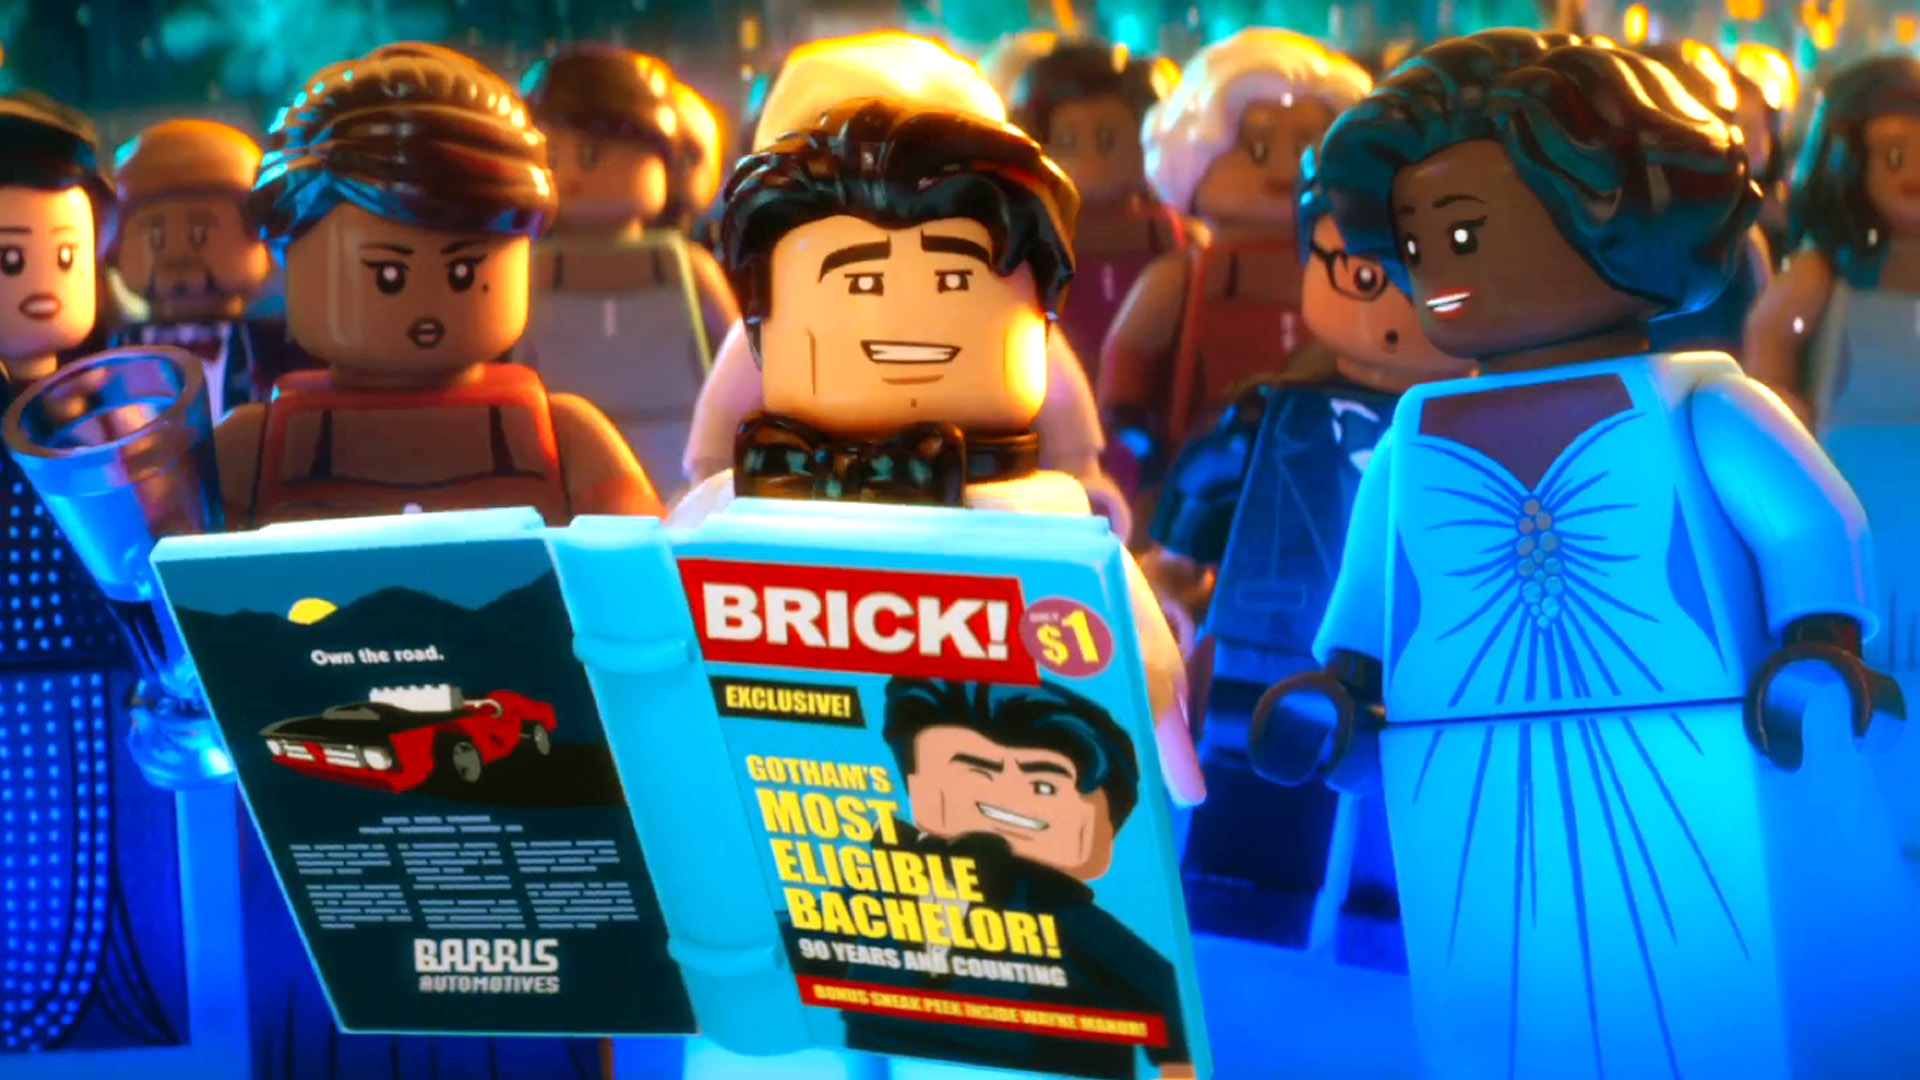 The Lego Batman Movie: The LEGO Batman Movie Movie Clip 